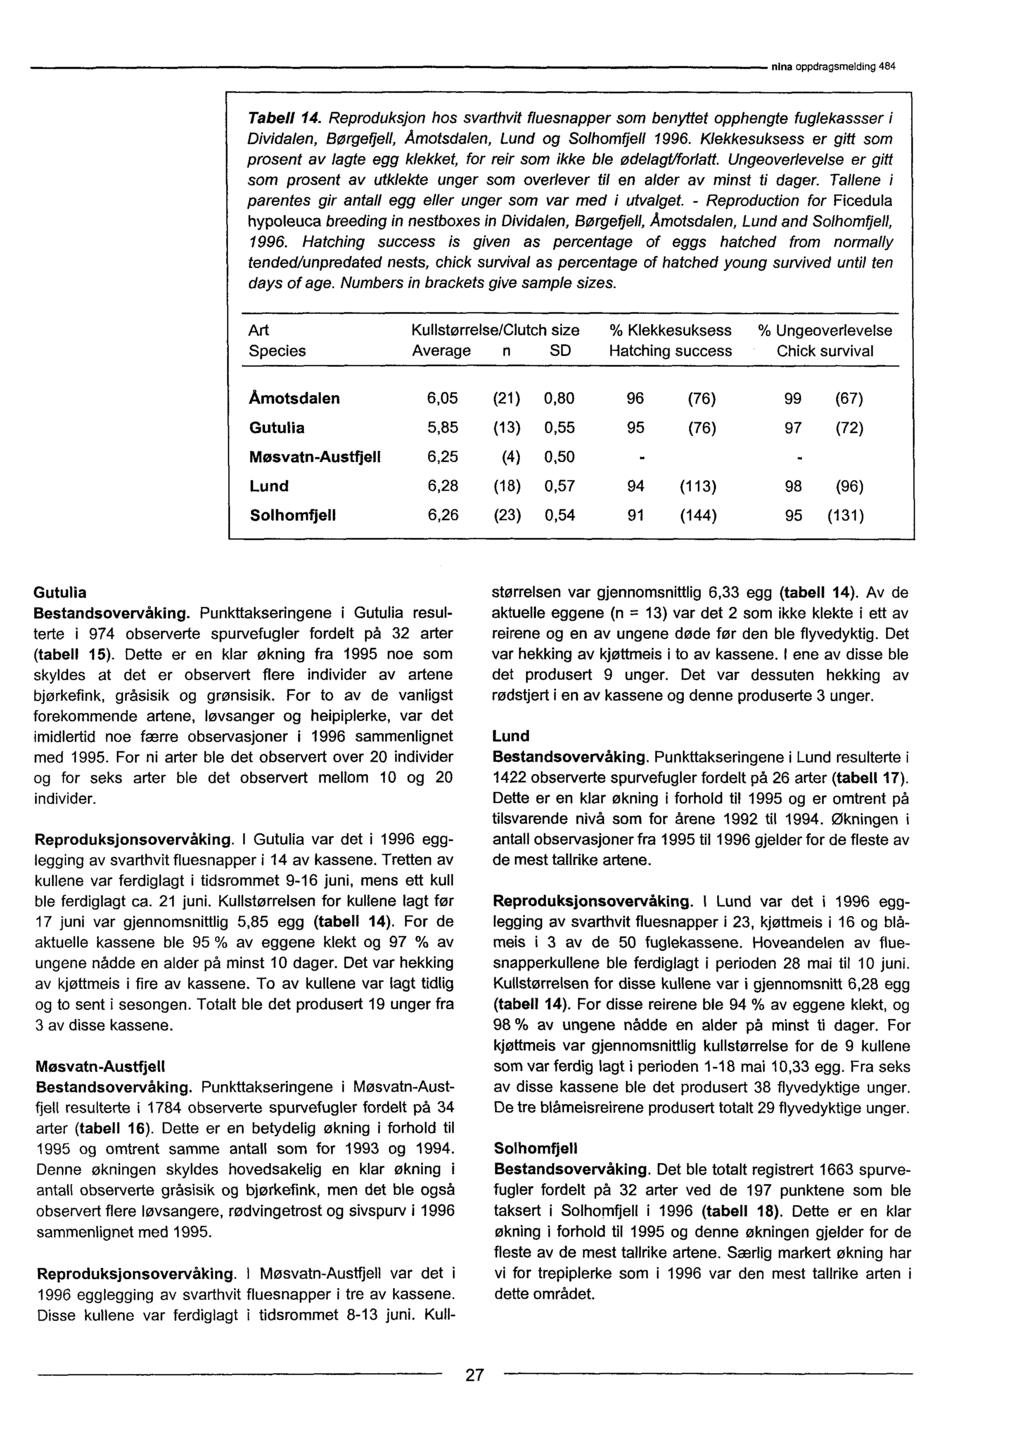 Tabell 14. Reproduksjon hos svarthvit fluesnapper som benyttet opphengte fuglekassser i Dividalen, Børgetjell, Amotsdalen, Lund og Solhomfjell 1996.